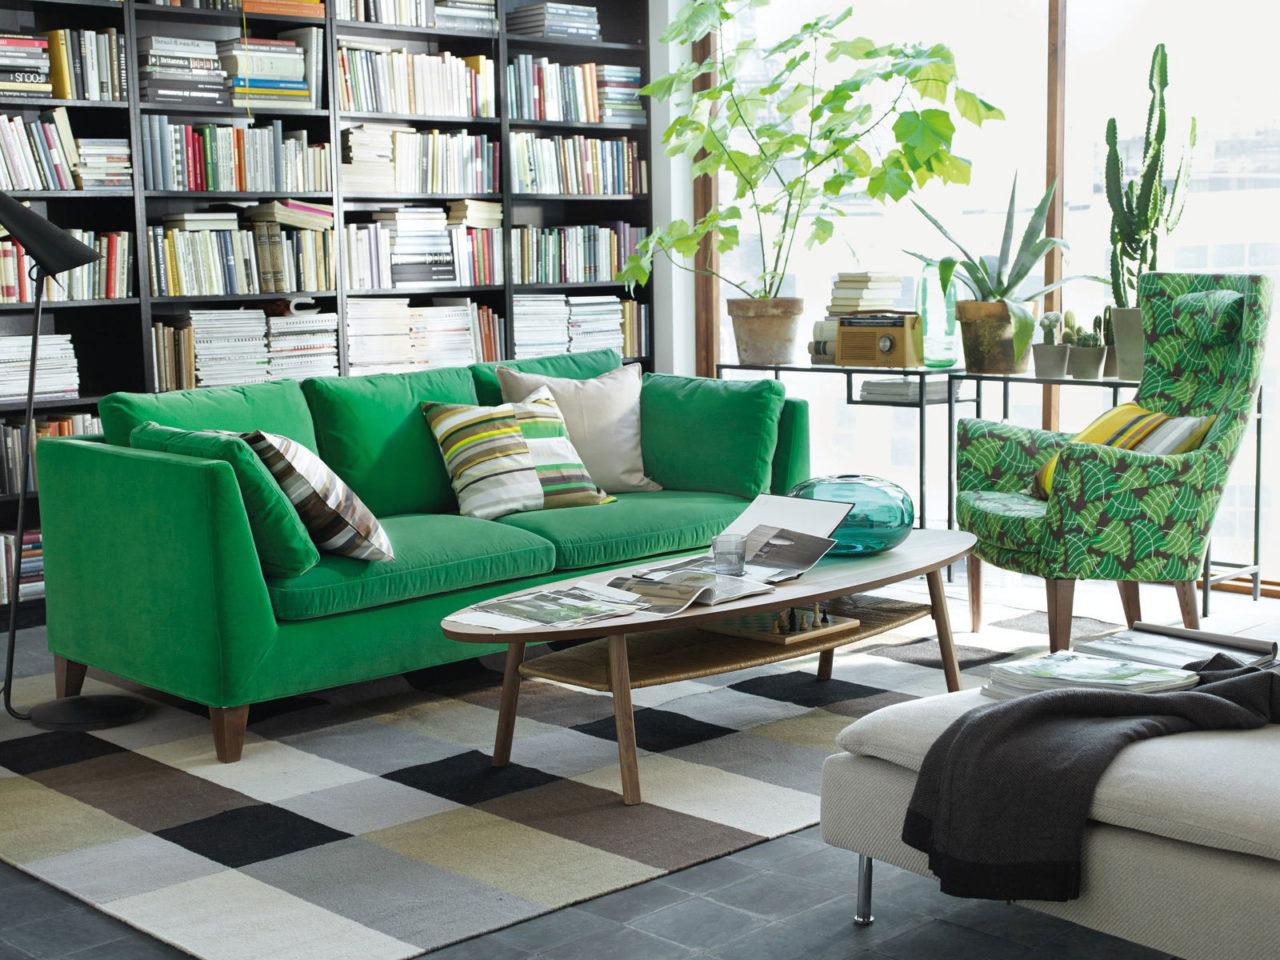 Vardagsrum med gröna växter i stora fönster, soffa och fåtölj i gröna toner, bokhyllor täcker en hel vägg.